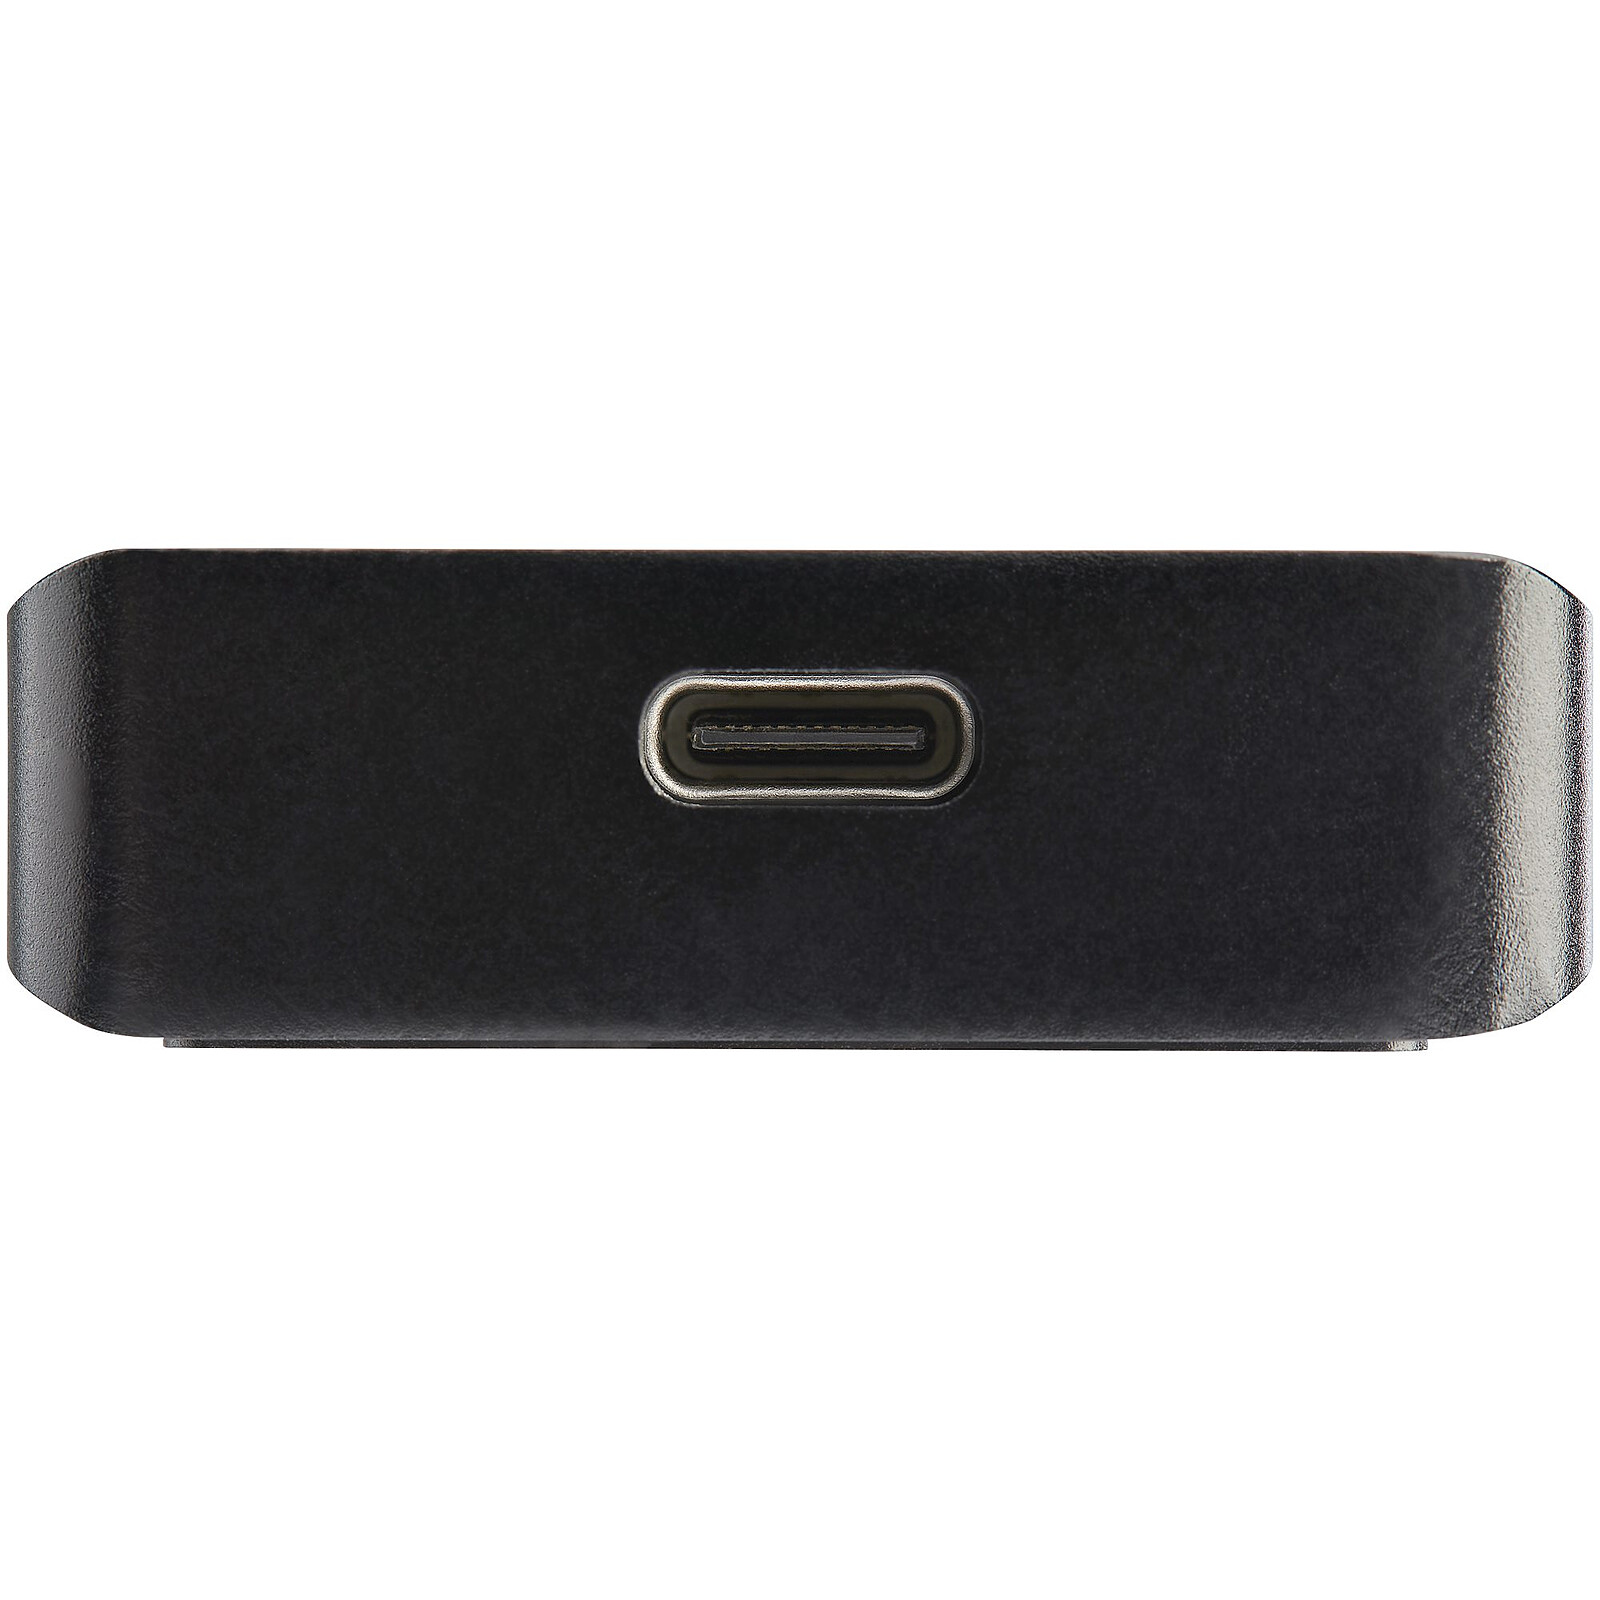 Boîtier USB 3.0 externe SSD SATA M.2 - Boîtier disque dur - Garantie 3 ans  LDLC